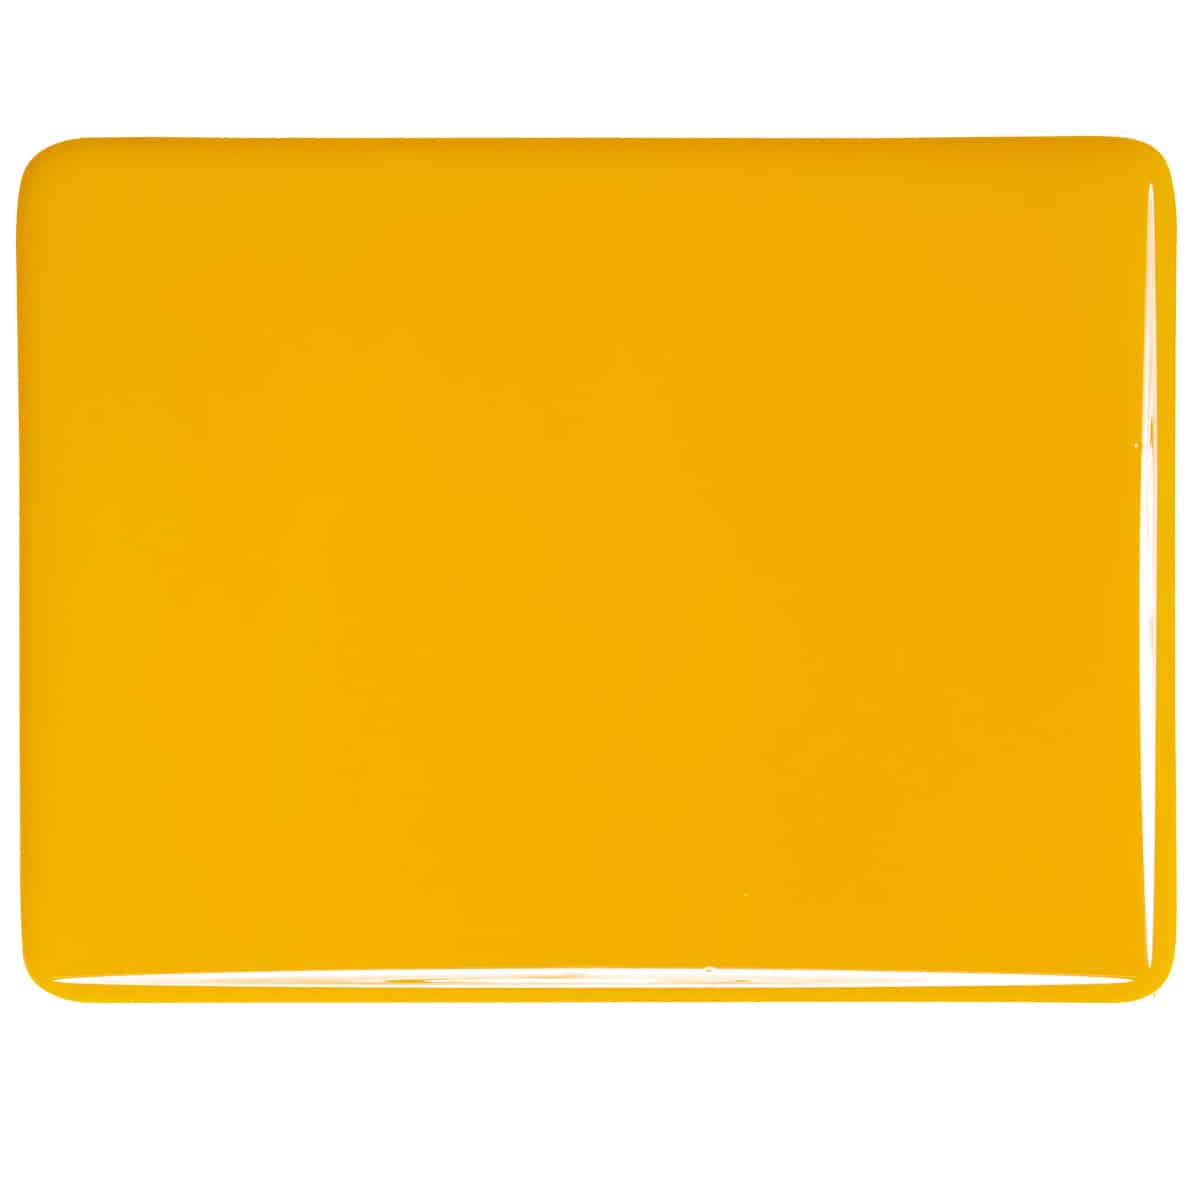 Sunflower Yellow Opal sheet glass swatch